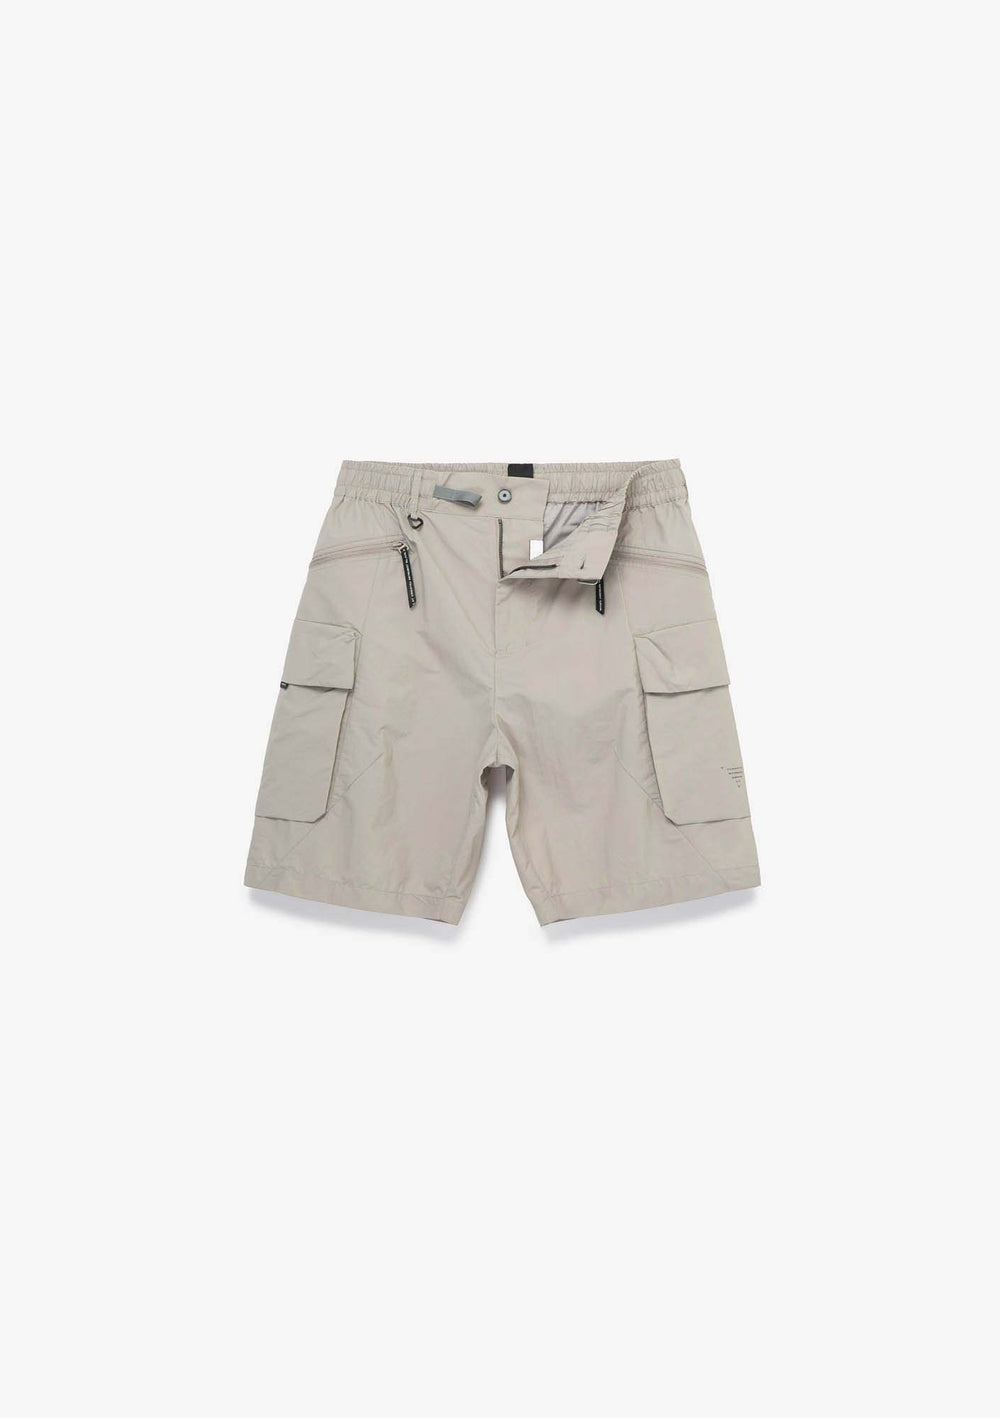 CETO Texturized Nylon Shorts Rm184-810